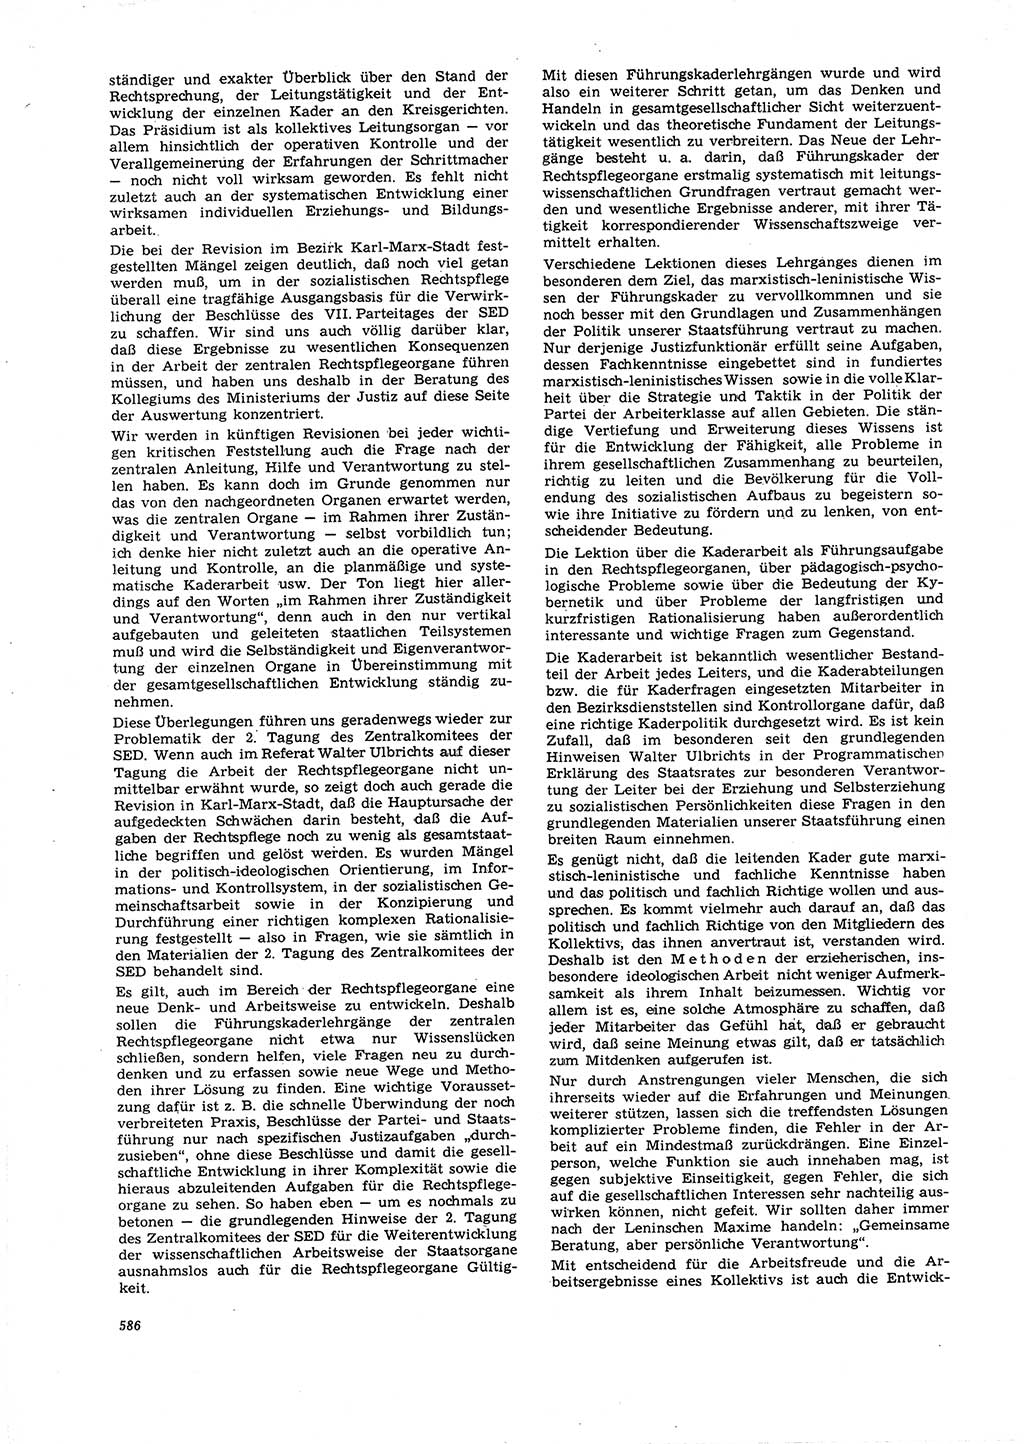 Neue Justiz (NJ), Zeitschrift für Recht und Rechtswissenschaft [Deutsche Demokratische Republik (DDR)], 21. Jahrgang 1967, Seite 586 (NJ DDR 1967, S. 586)